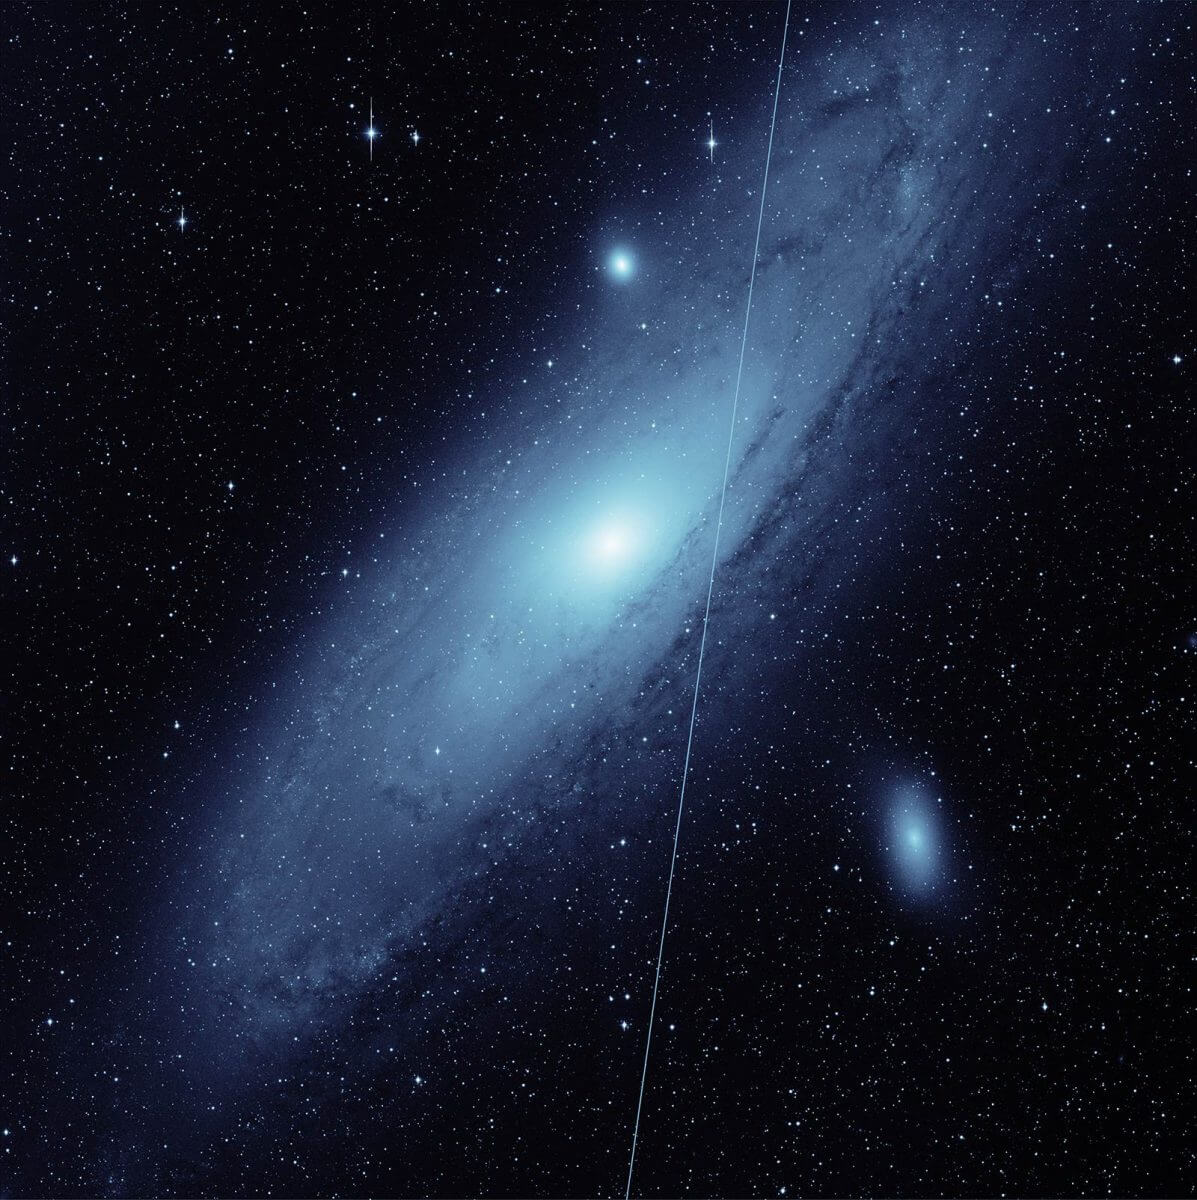 カリフォルニア工科大学の掃天観測施設「ZTF」で撮影された「アンドロメダ銀河」。スターリンク衛星の光跡が重なっている（Credit: Caltech Optical Observatories/IPAC ）